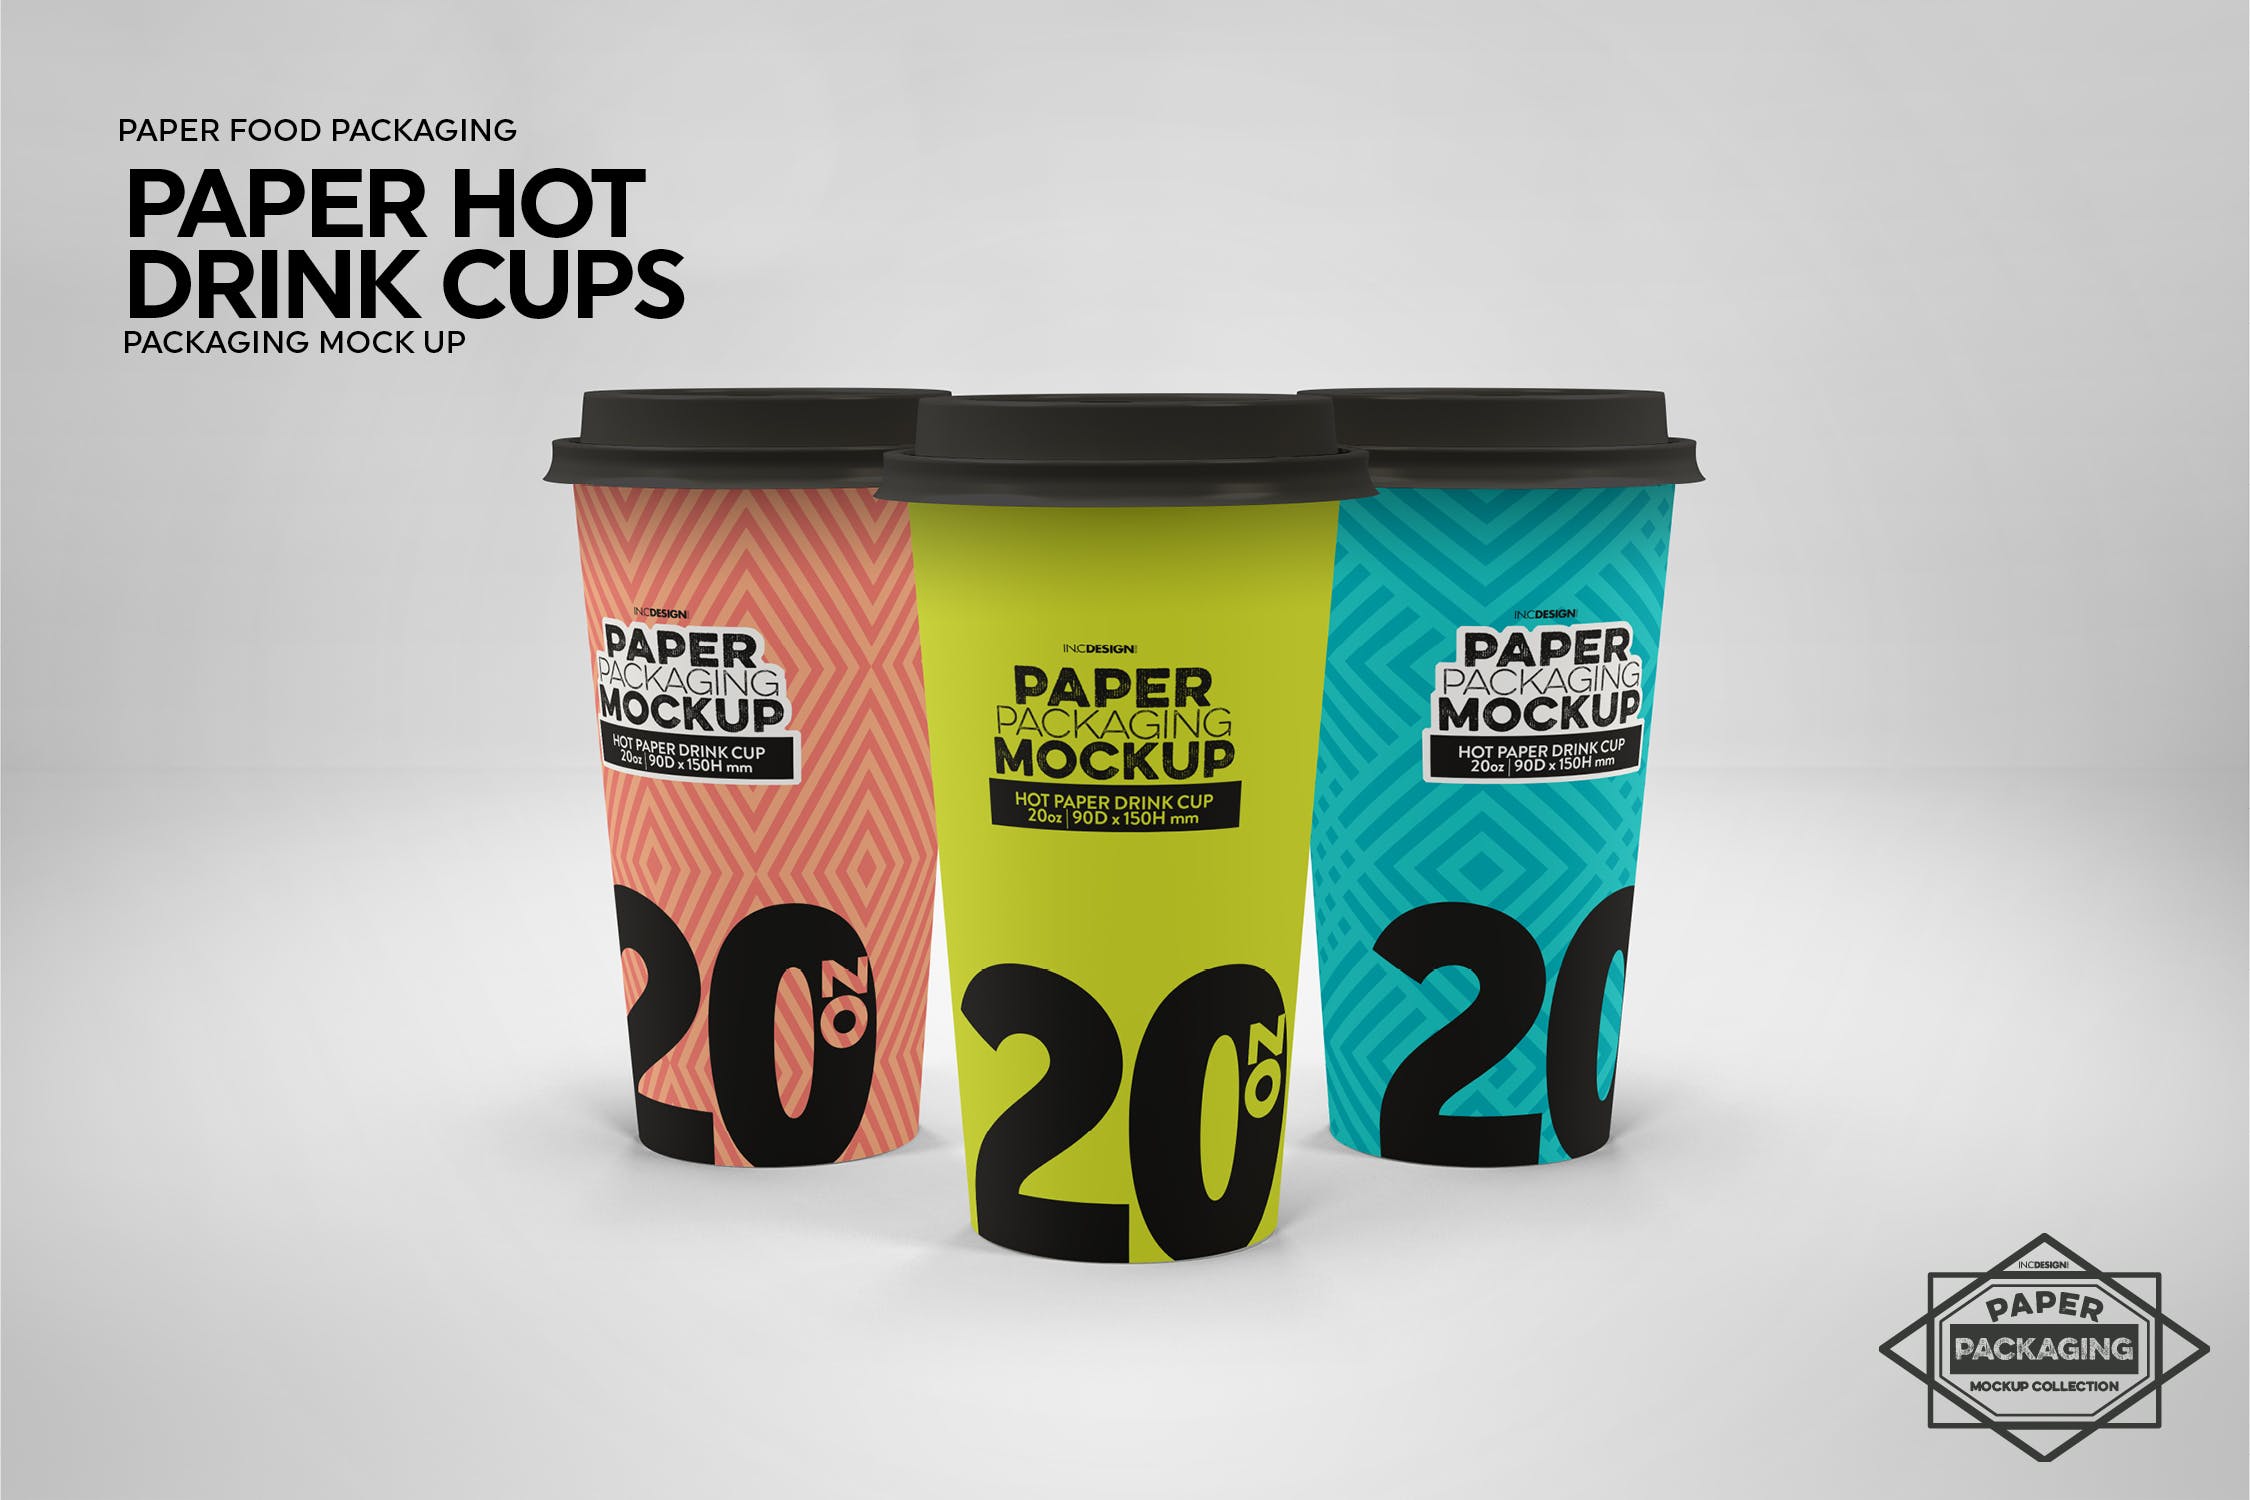 热饮一次性纸杯外观设计第一素材精选 Paper Hot Drink Cups Packaging Mockup插图(6)